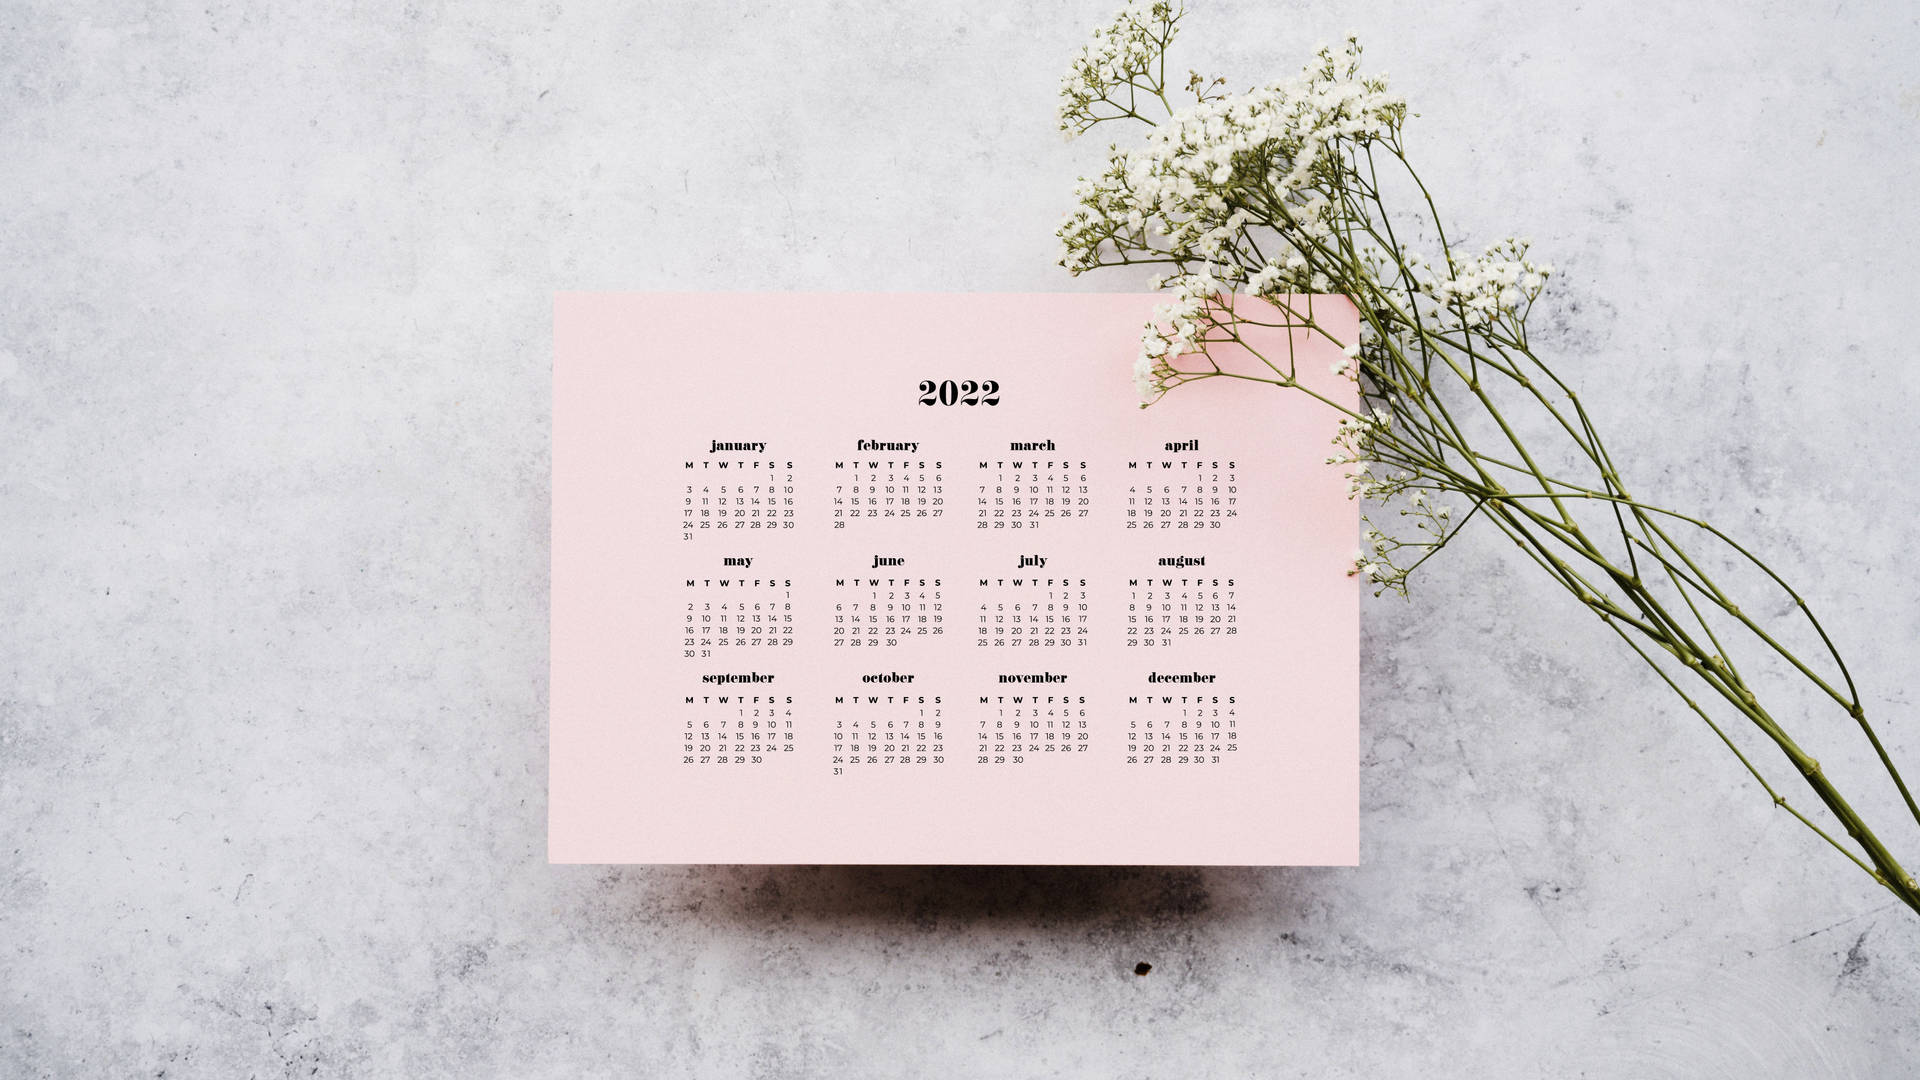 Gypsophila 2022 Calendar Picture